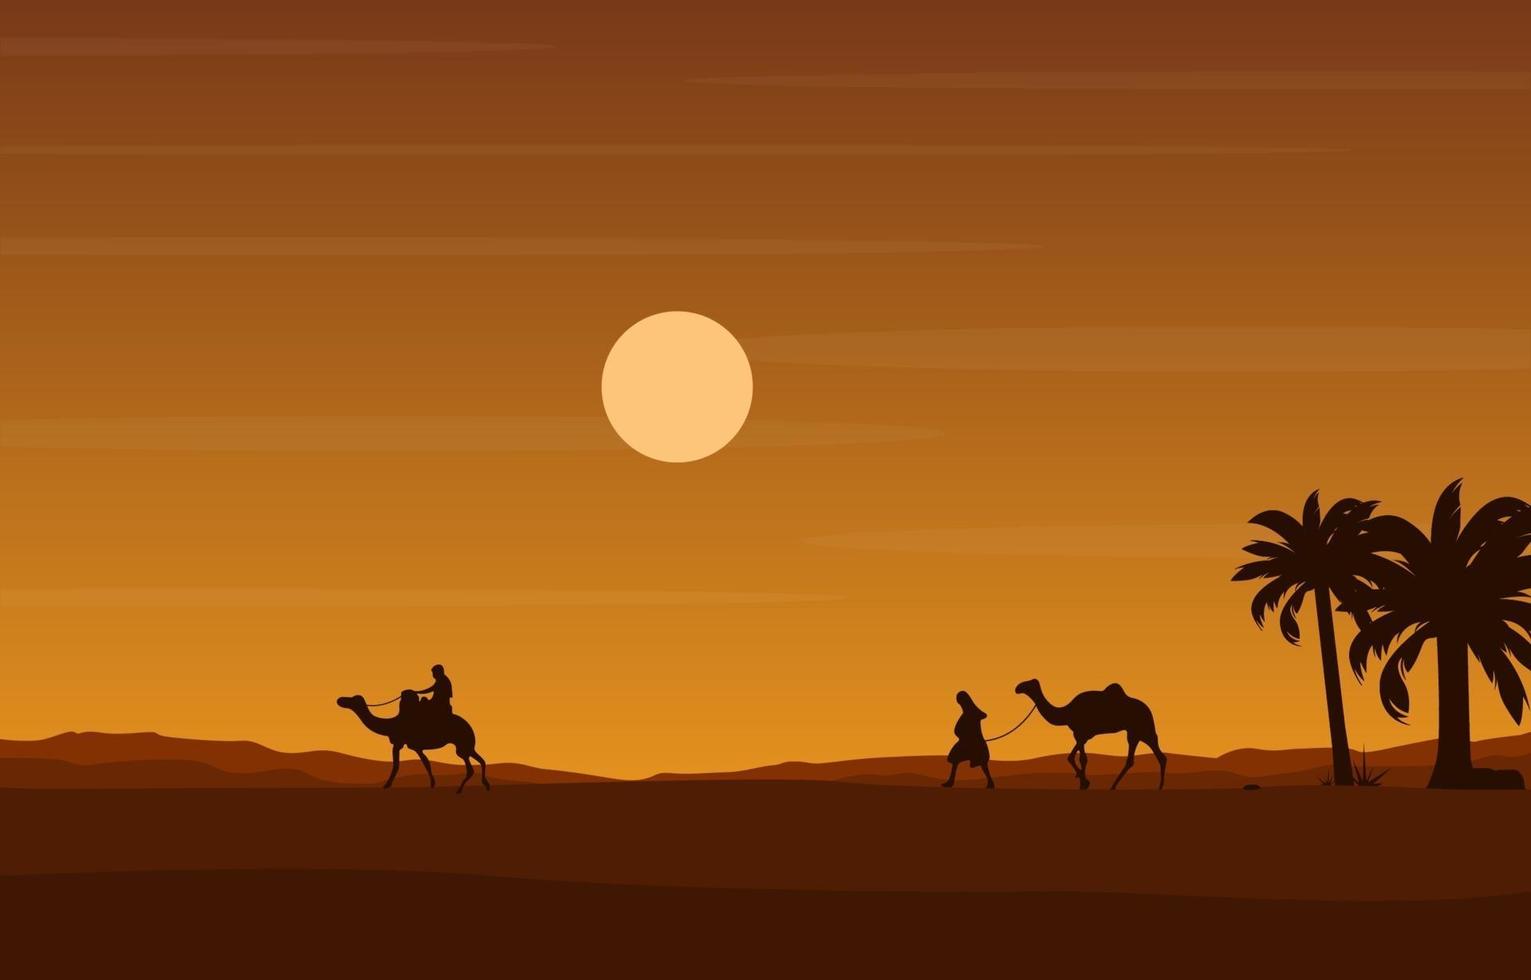 Camel Rider Crossing Vast Desert Hill Arabian Landscape Illustration vector